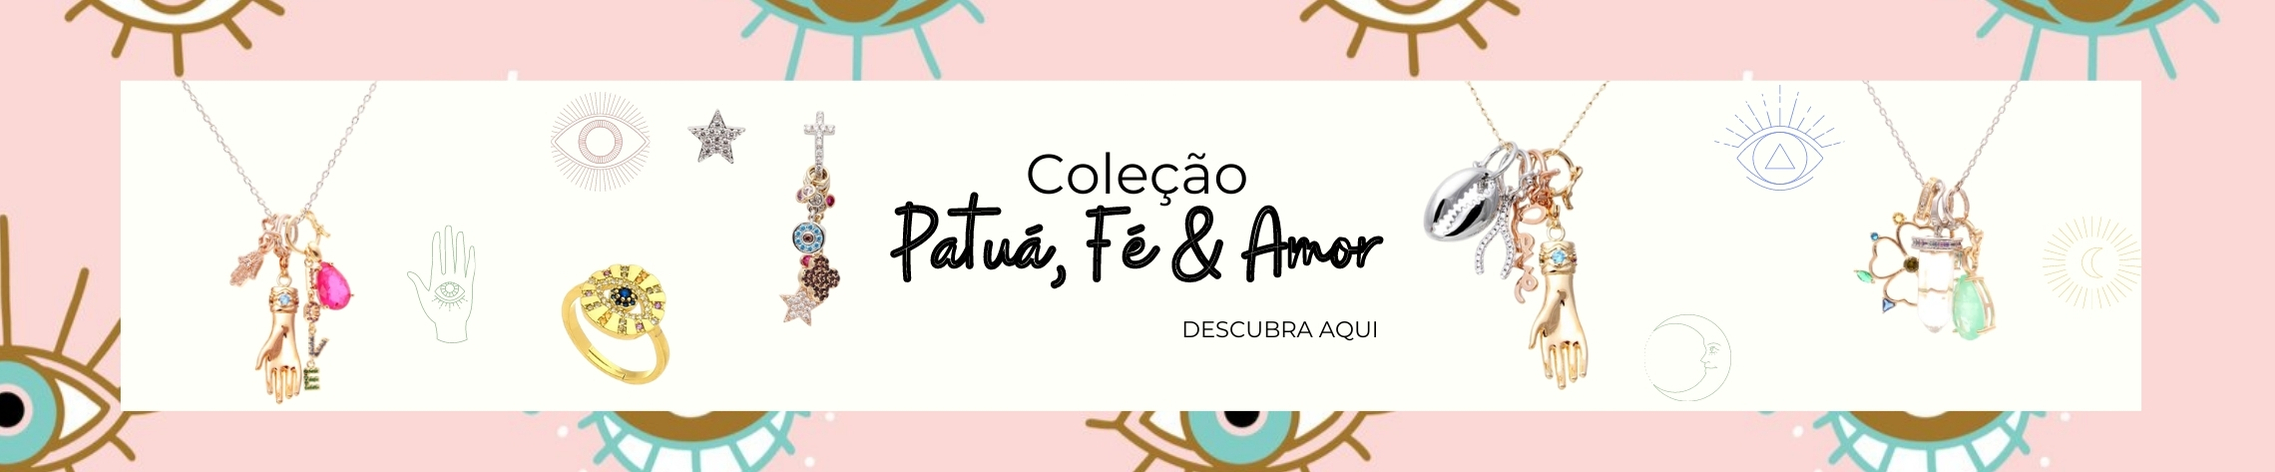 Patuá, Fé & Amor